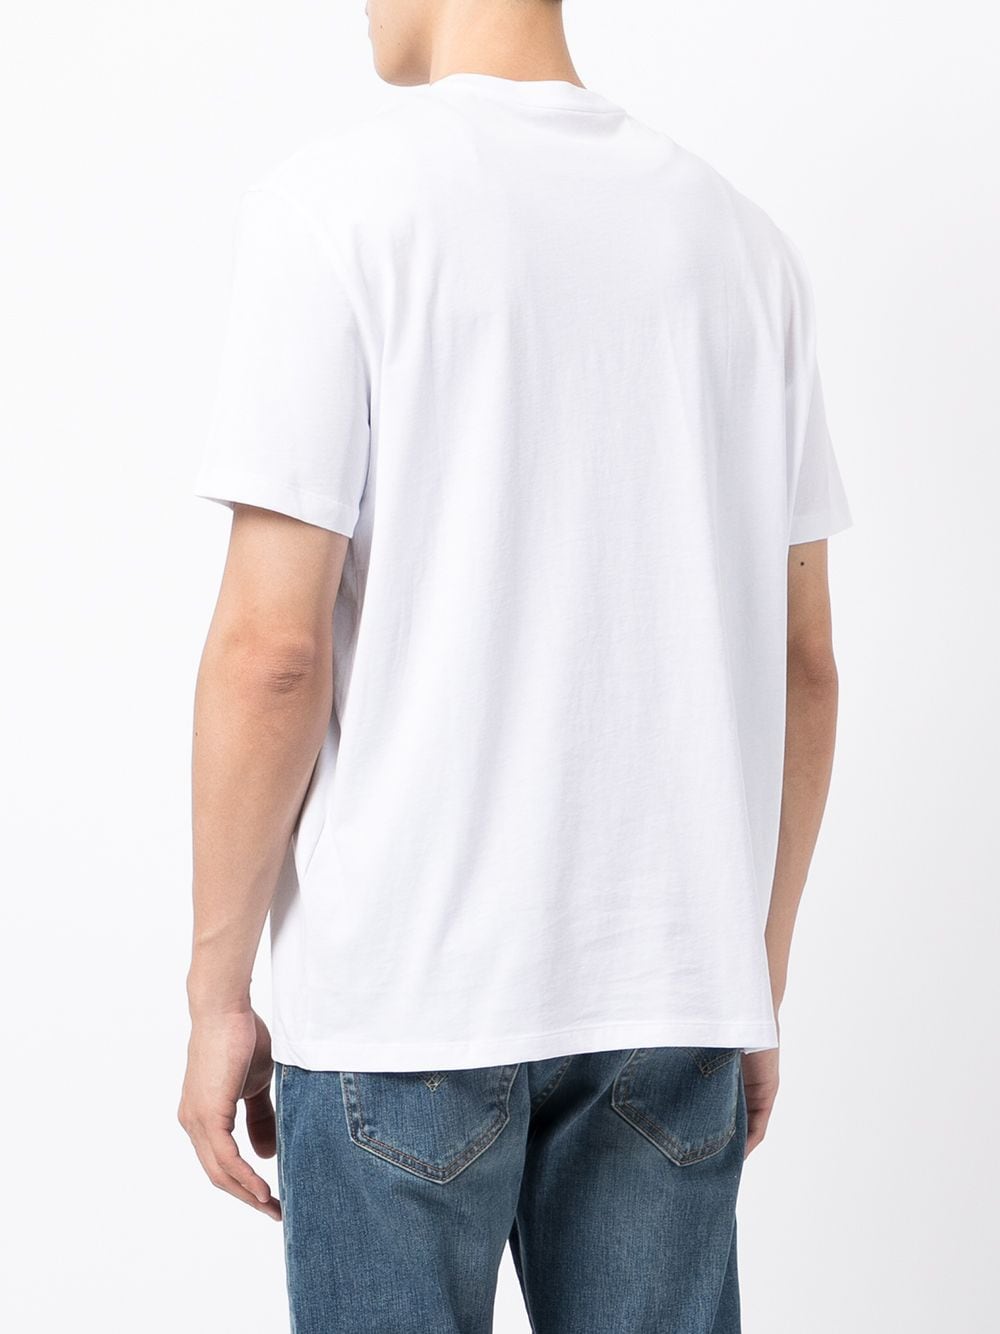 фото Armani exchange футболка с графичным принтом и v-образным вырезом